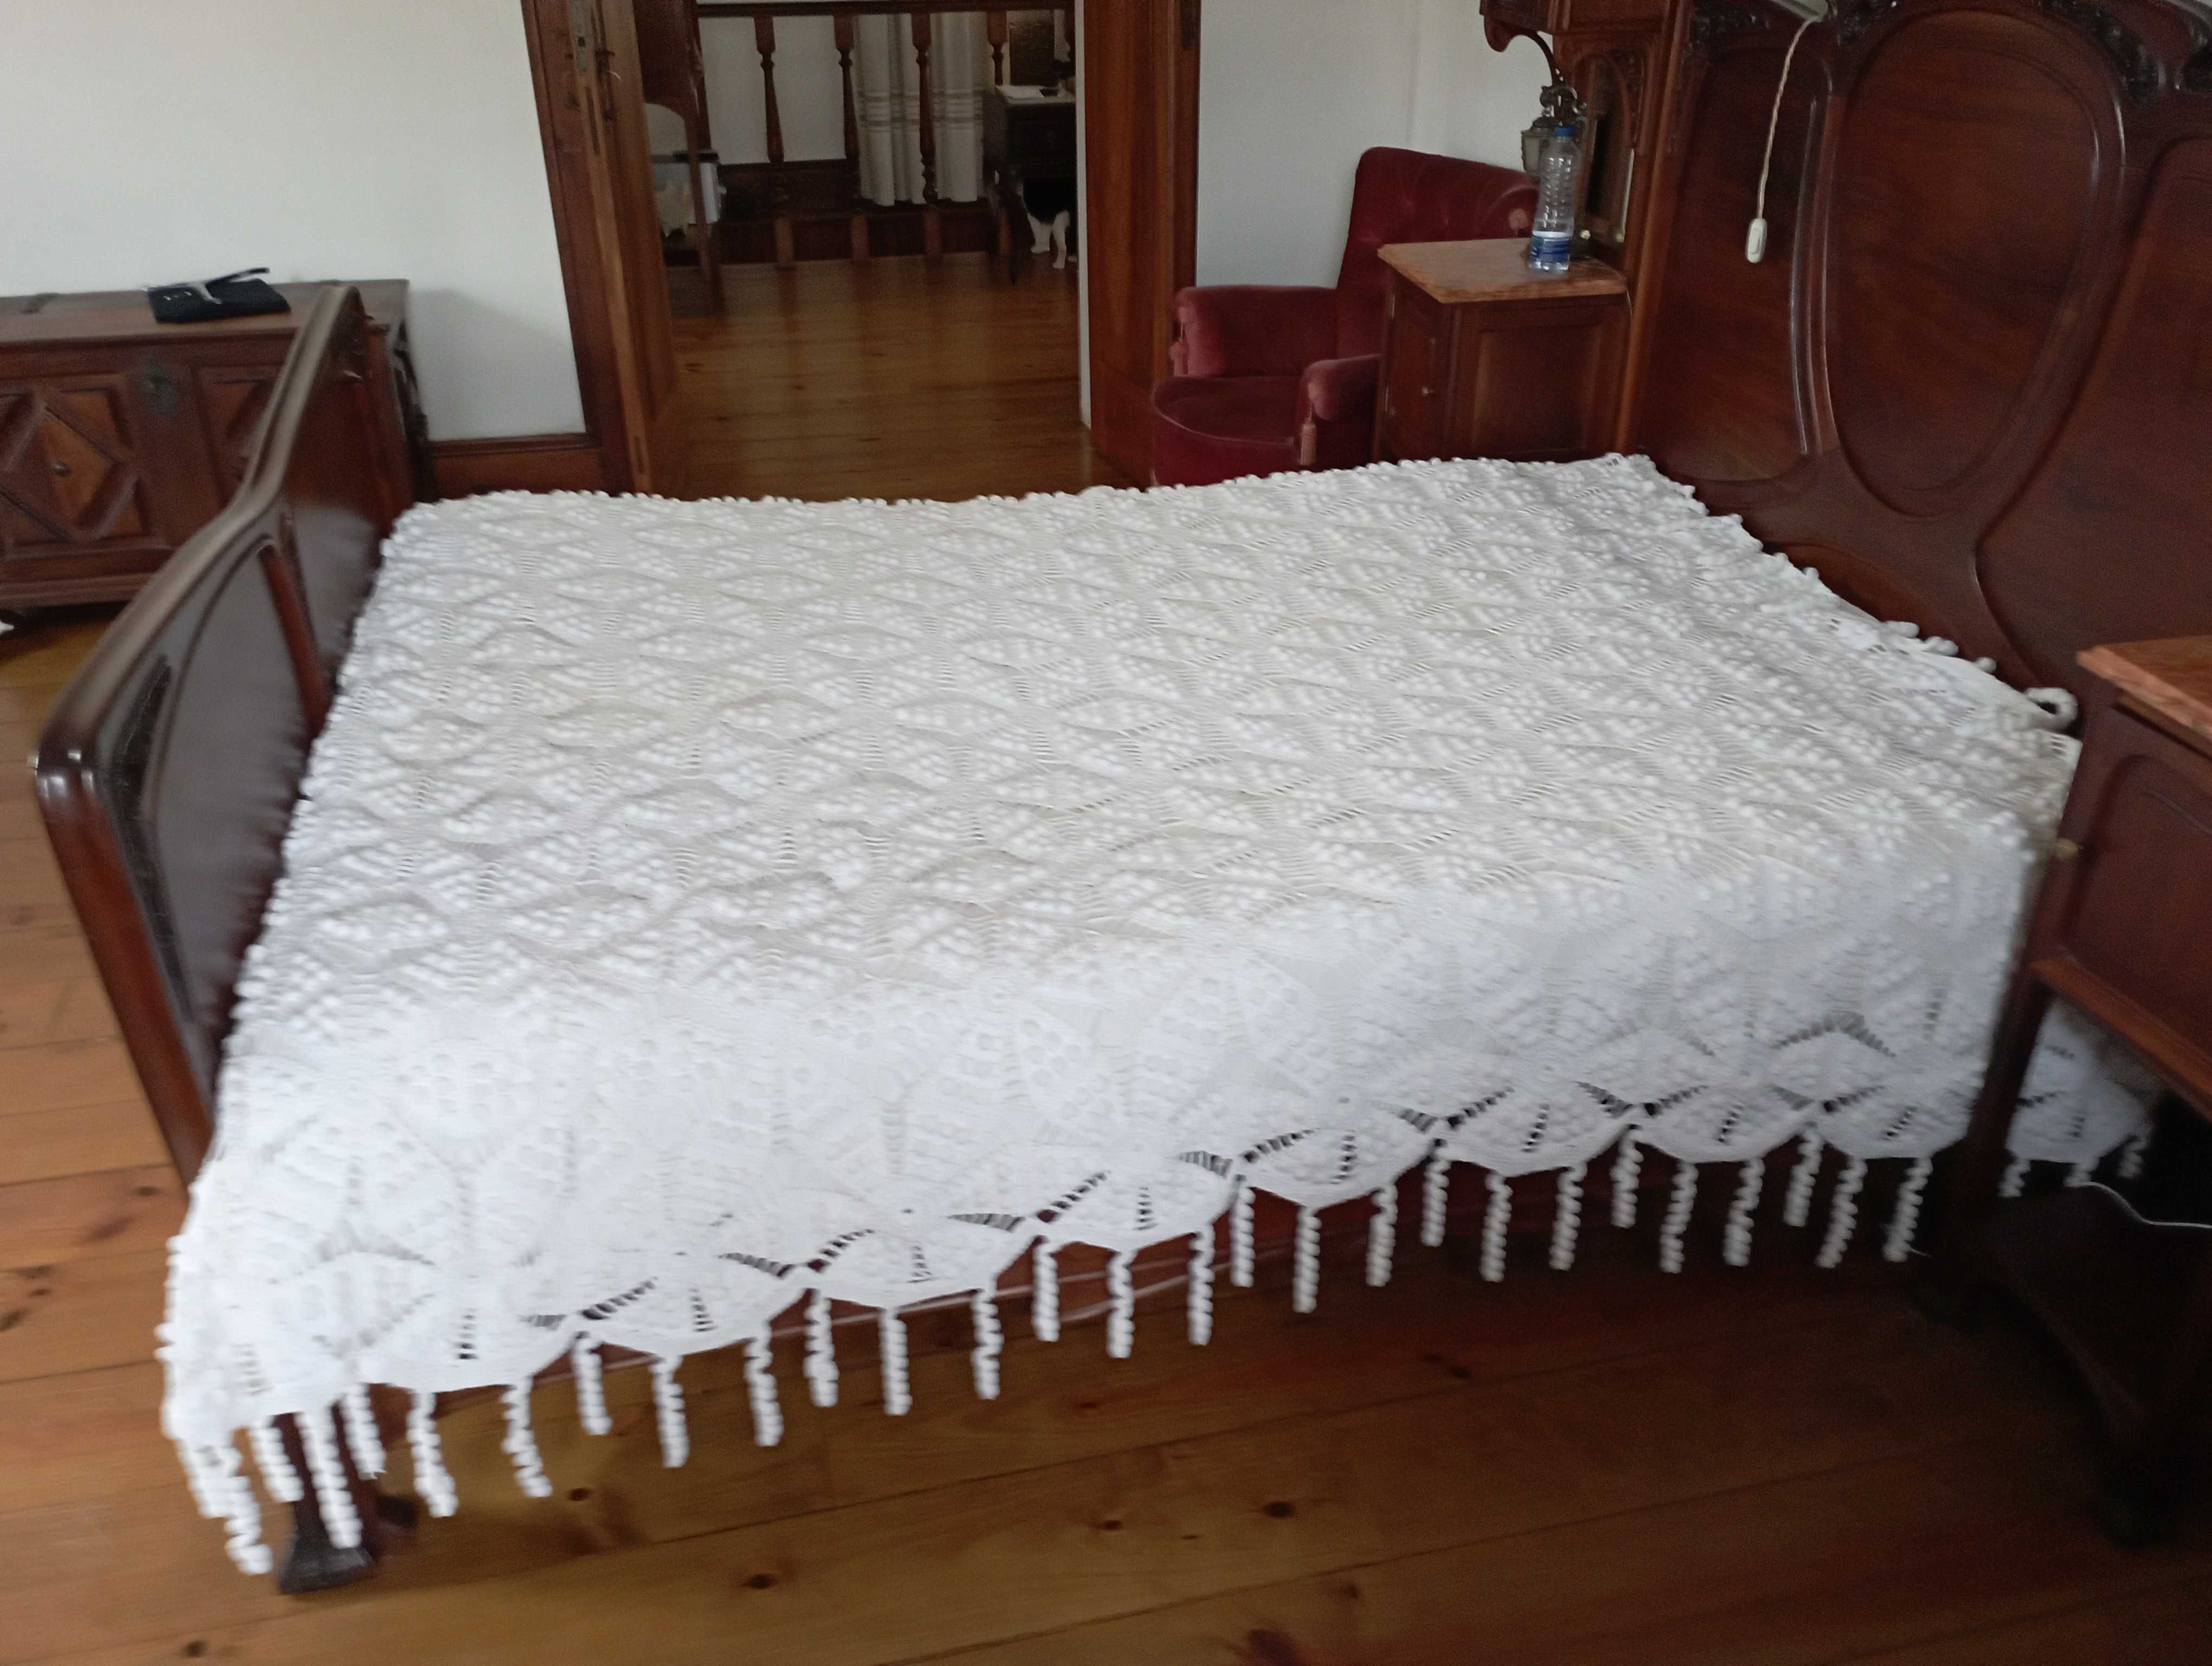 Colcha em crochet feita com algodão branco